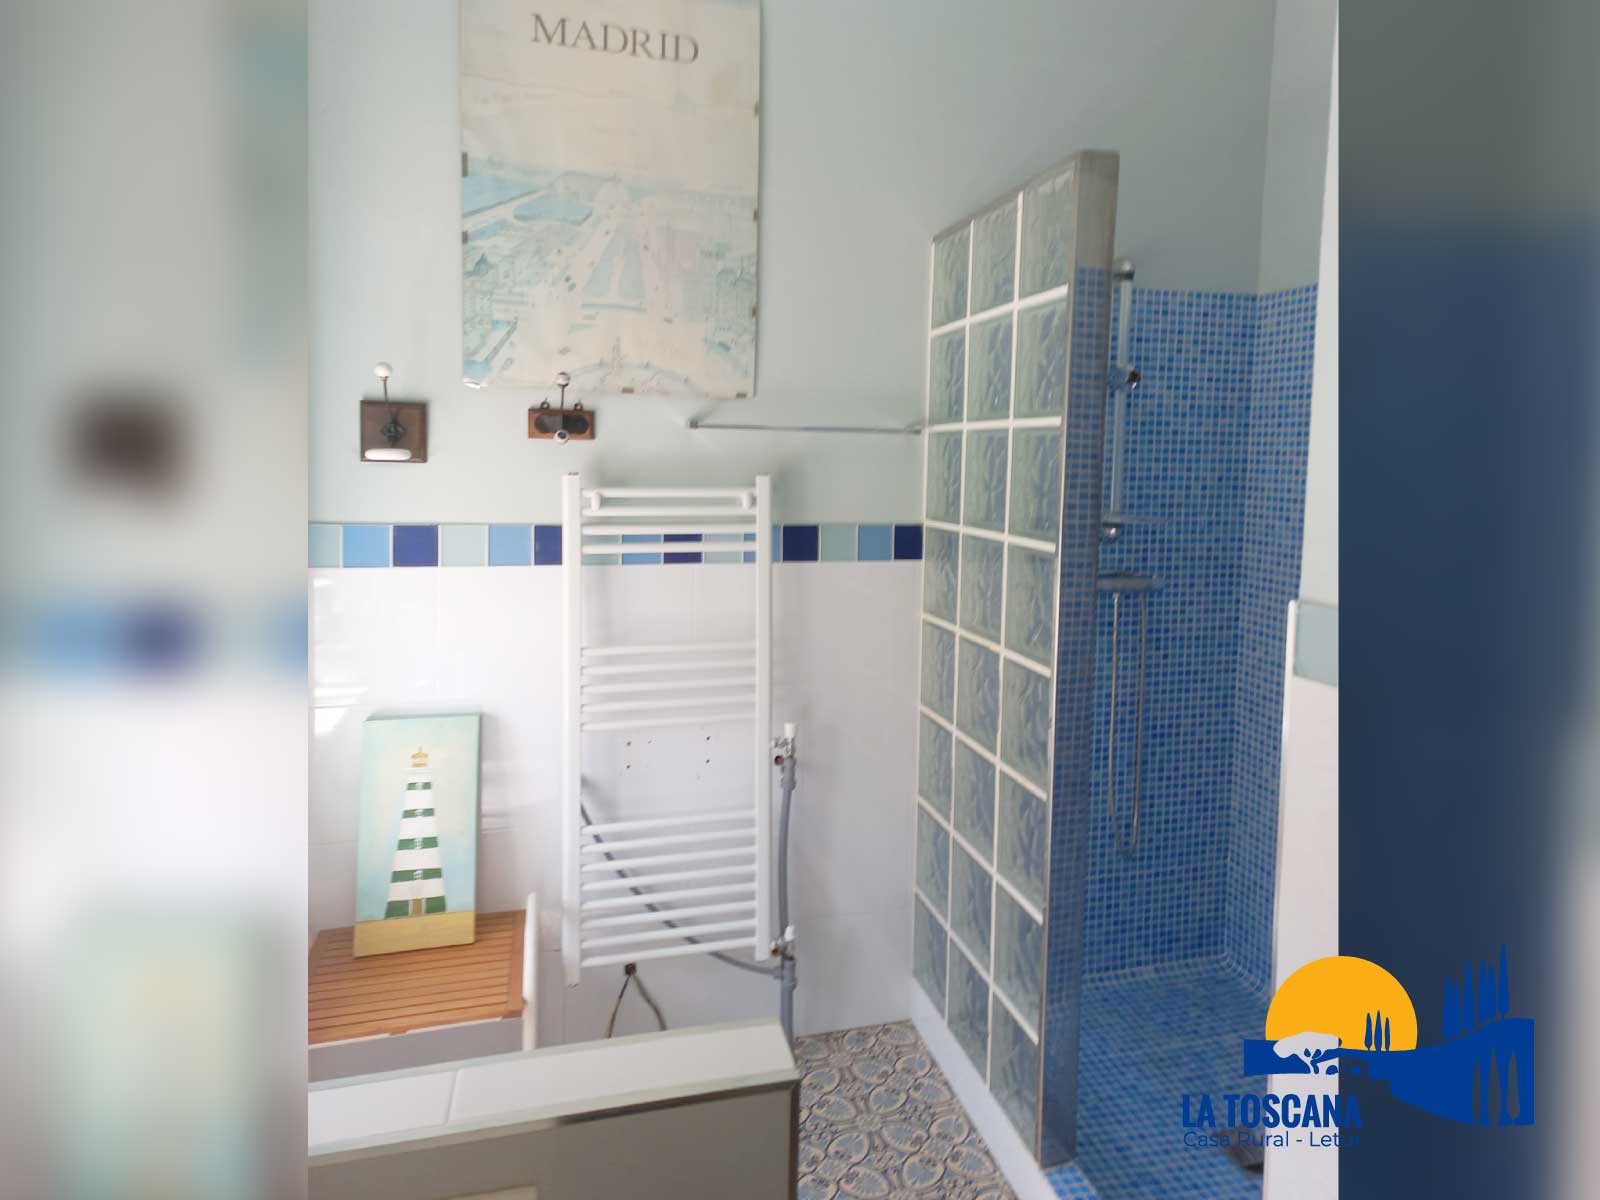 Baño con ducha de azulejos - La Toscana de Letur - Casa rural